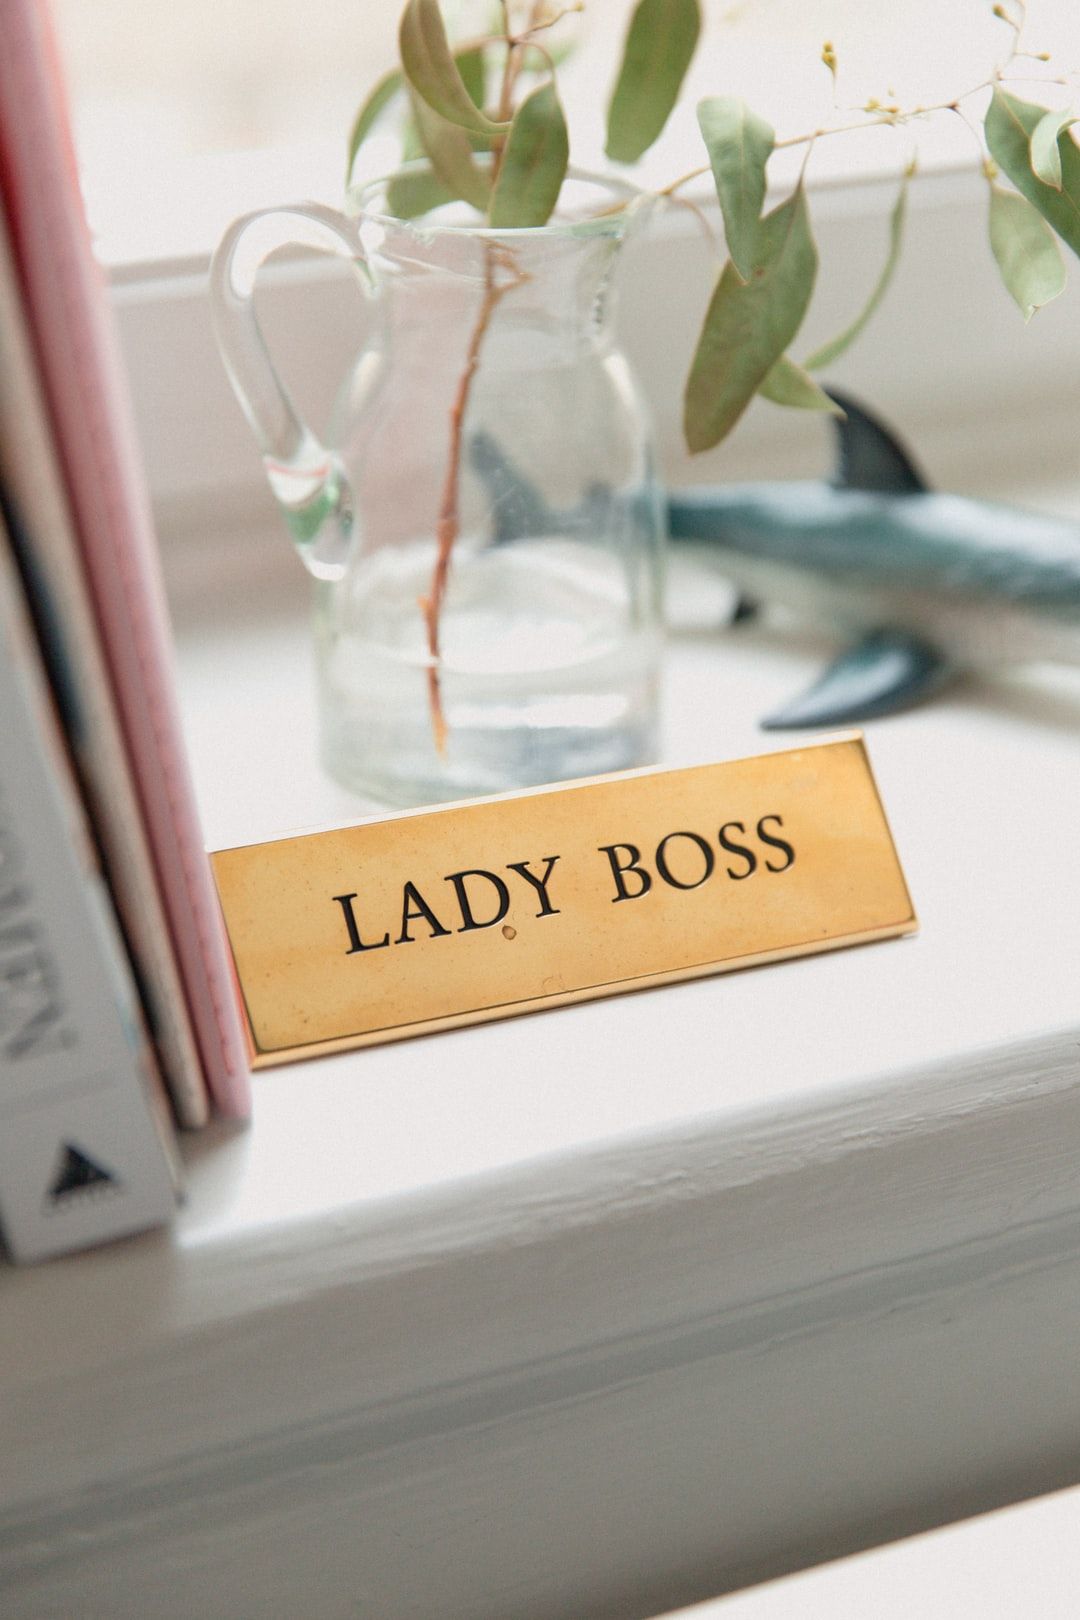 Lady Boss photo